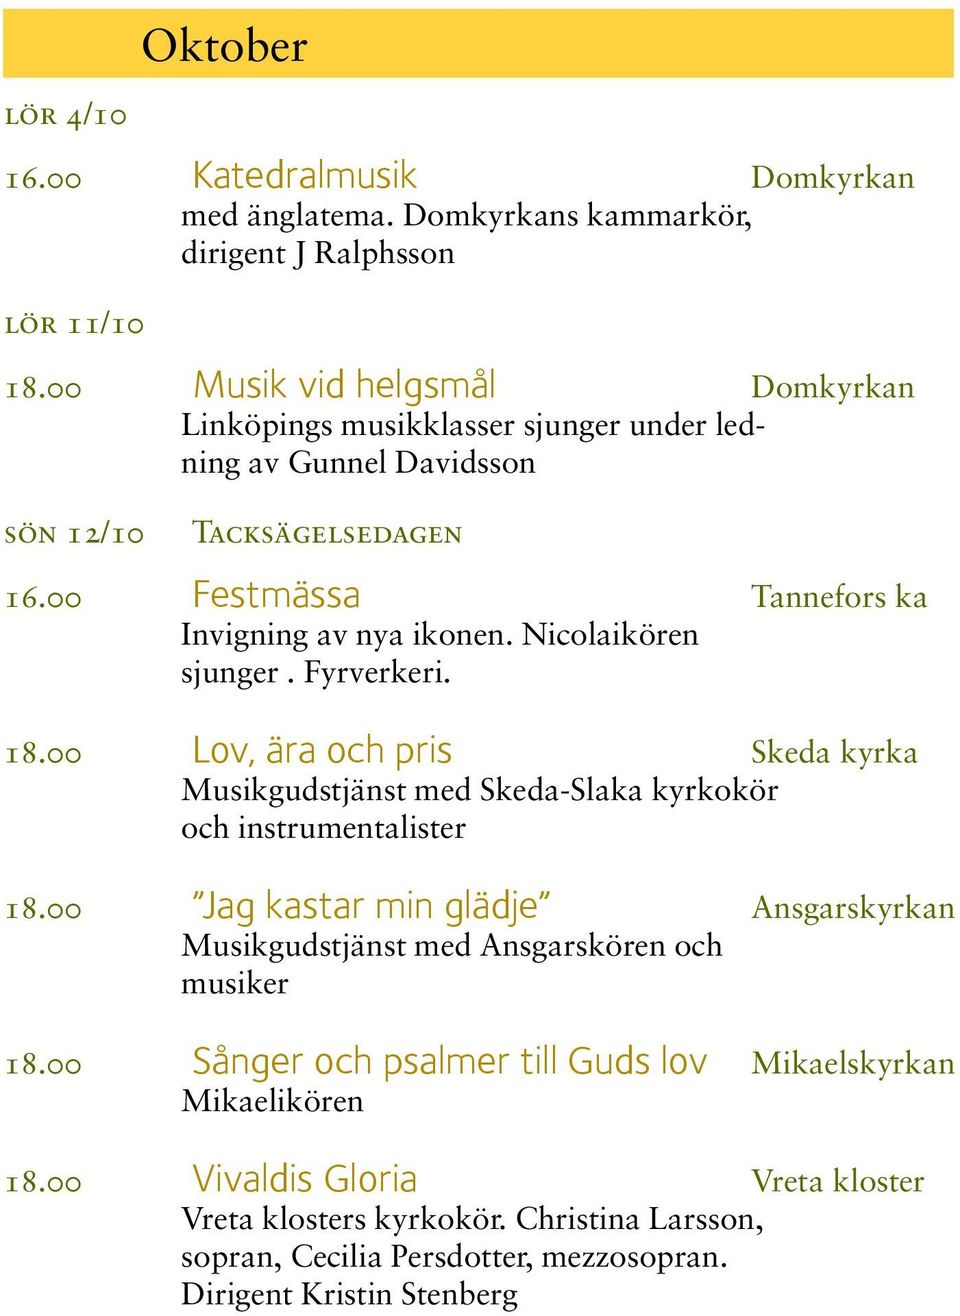 Nicolaikören sjunger. Fyrverkeri. 18.00 Lov, ära och pris Skeda kyrka Musikgudstjänst med Skeda-Slaka kyrkokör och instrumentalister 18.